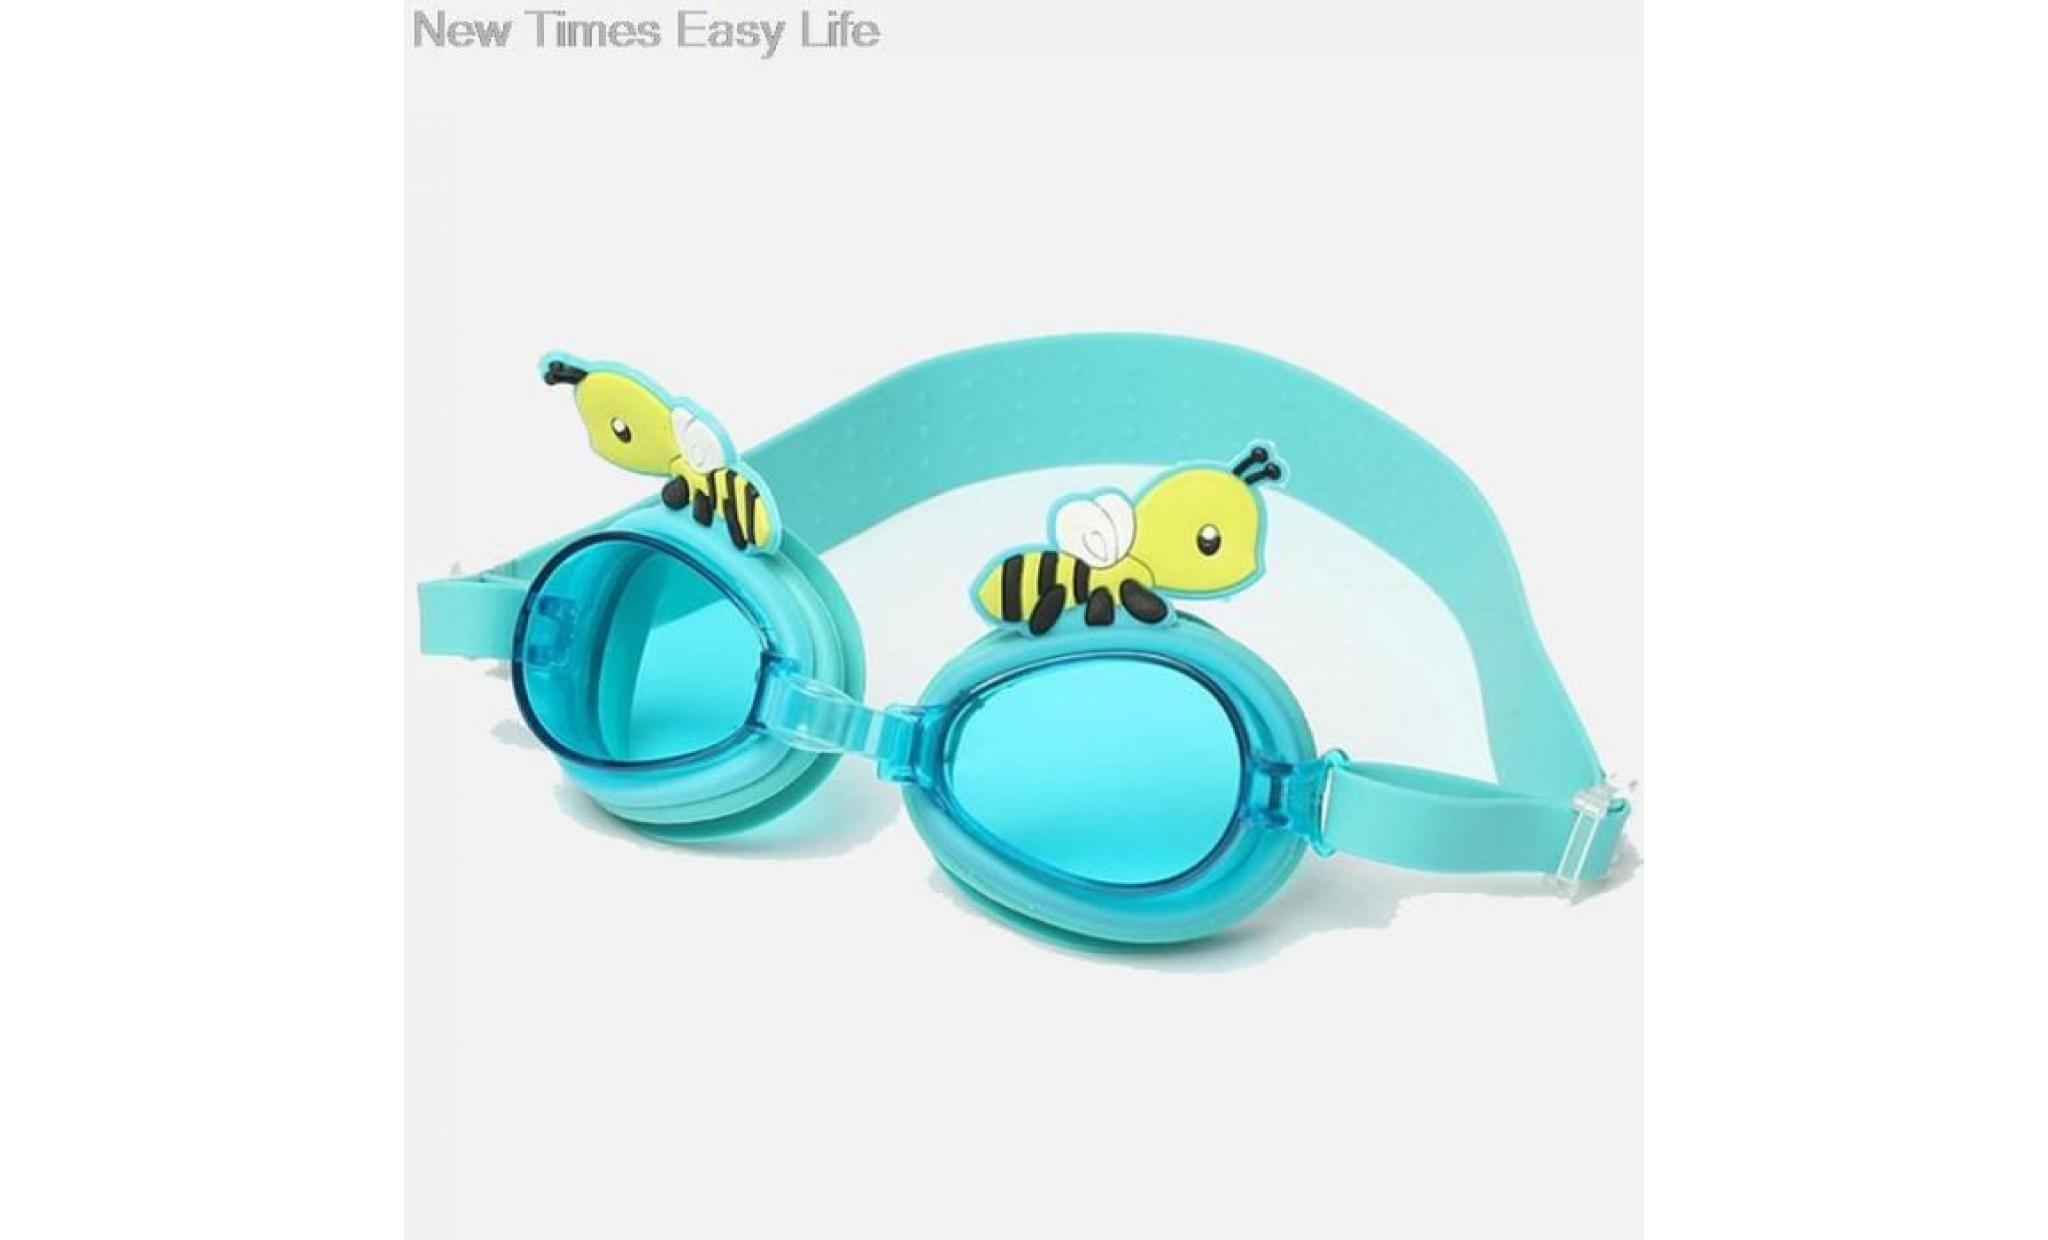 bleu clair cartoon abeilles enfants etanche anti fog protection uv swim piscine silicone lunettes lunettes pas cher